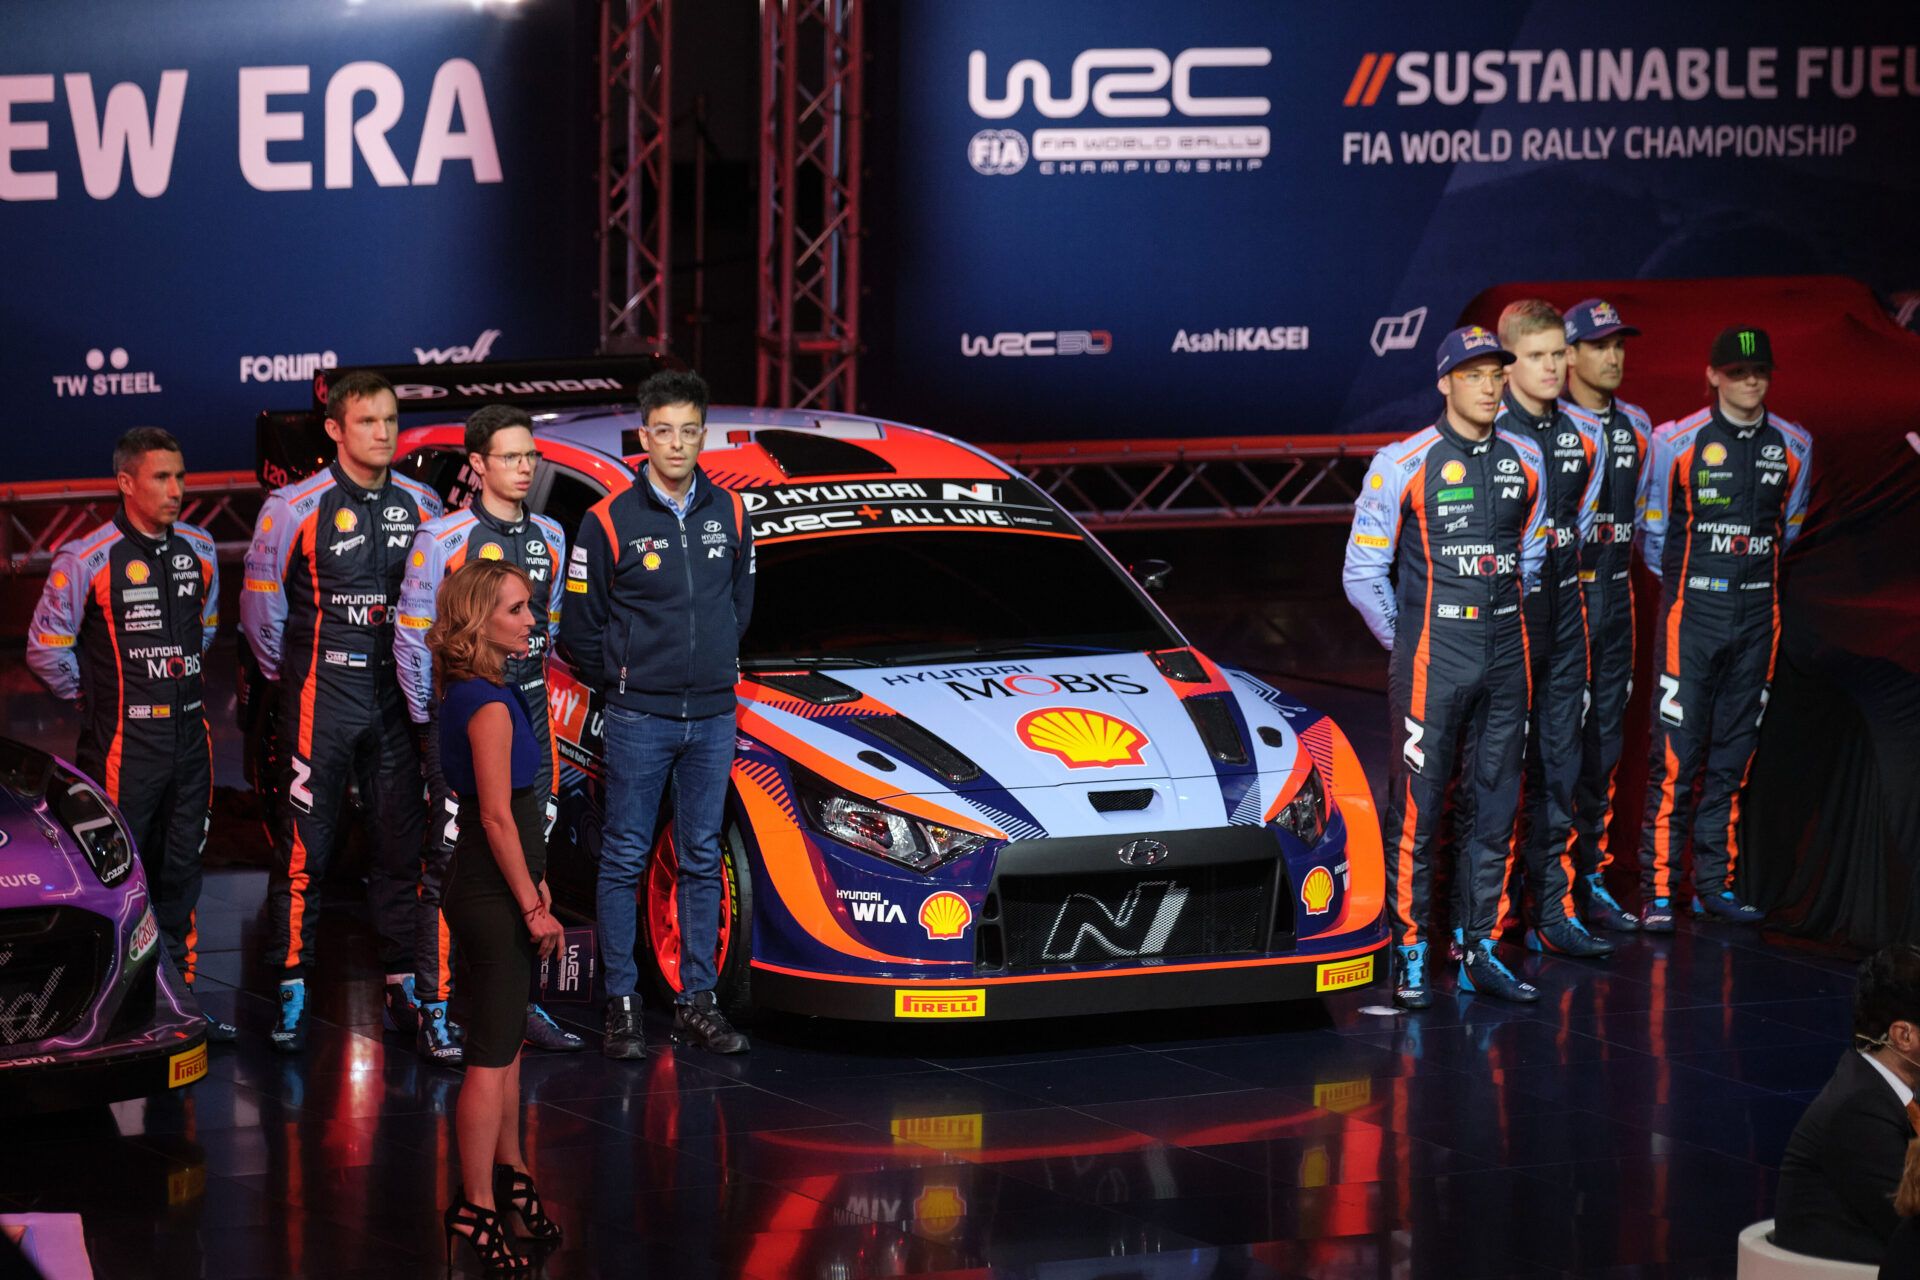 Η Hyundai Motorsport οδεύει στη νέα υβριδική εποχή του WRC